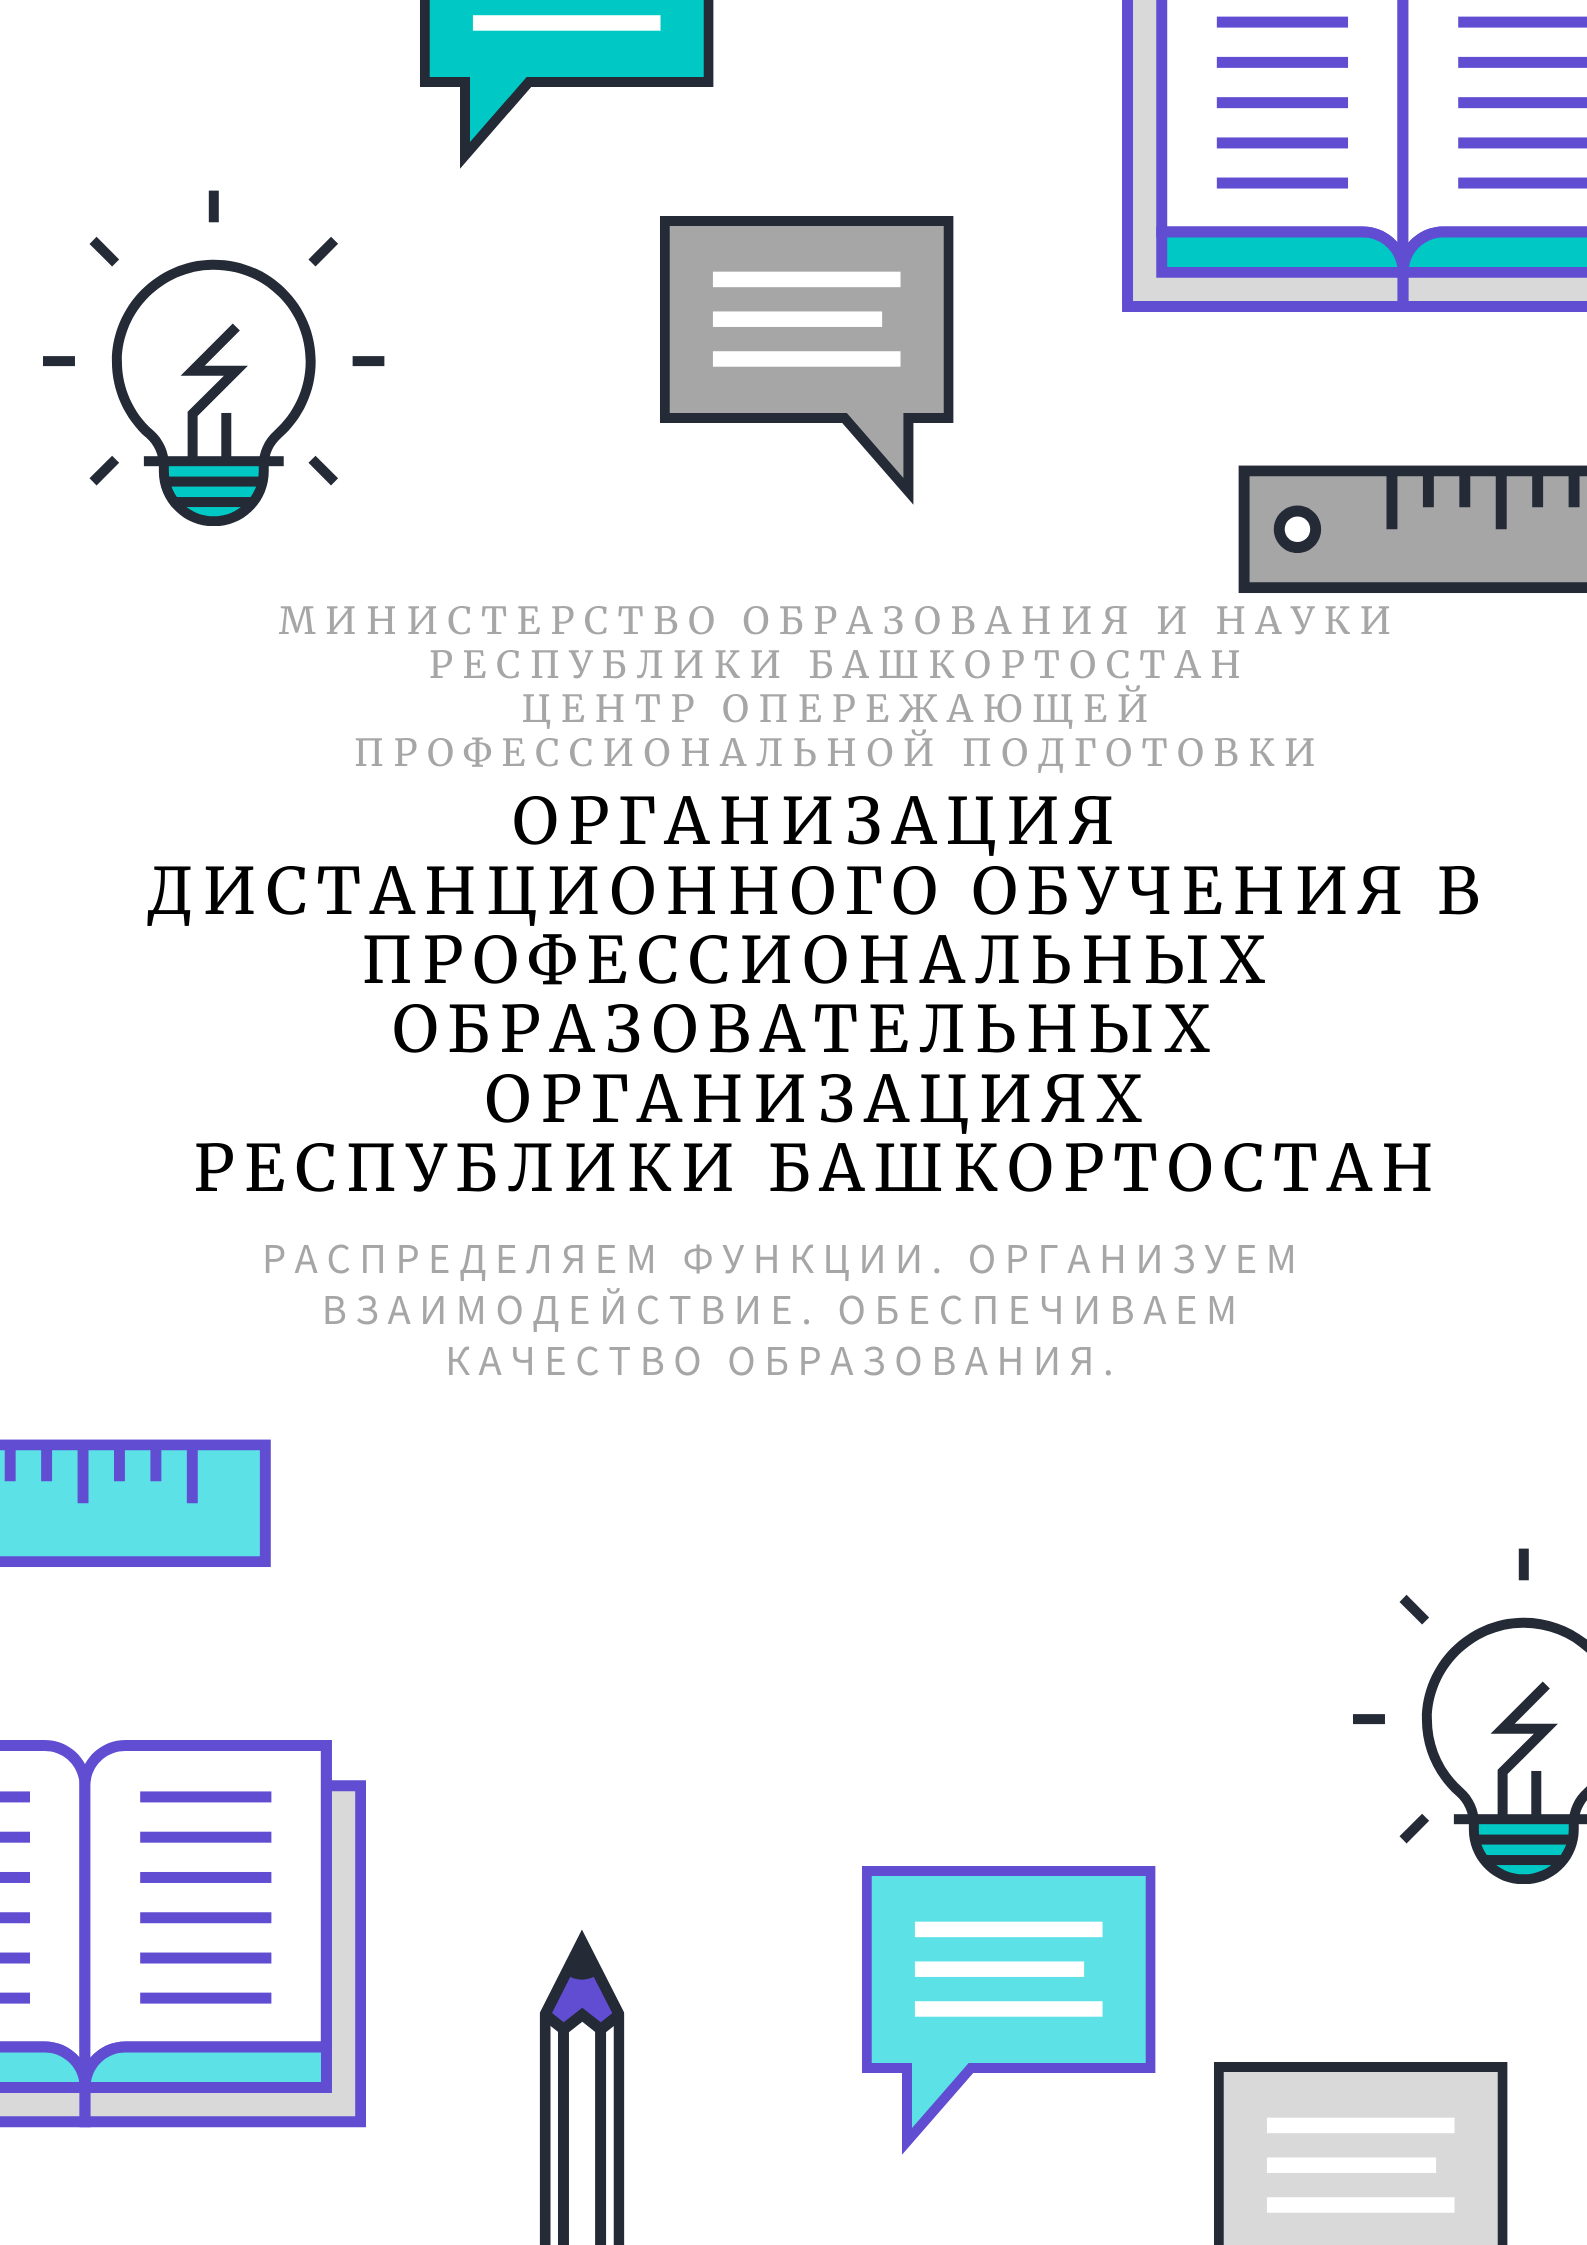 В Башкортостане выпустили методические рекомедации по дистанционному обучению